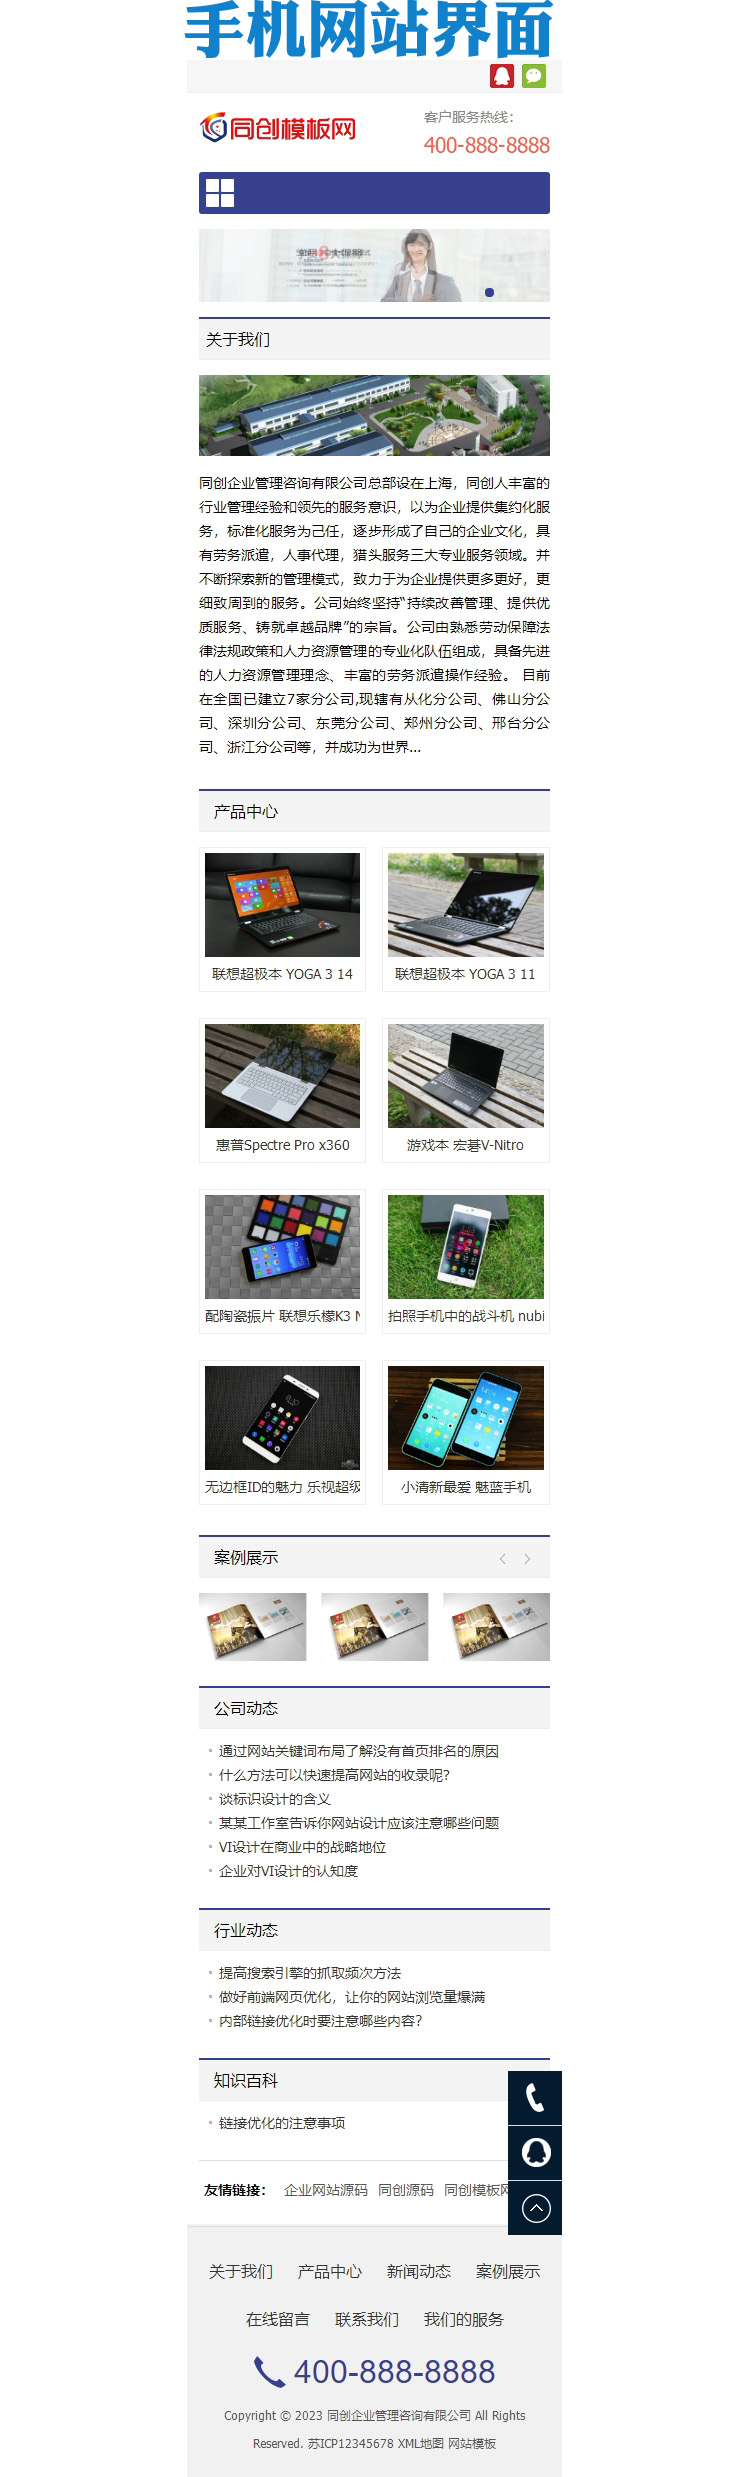 响应式电子科技产品公司网站模板-ZP001-3